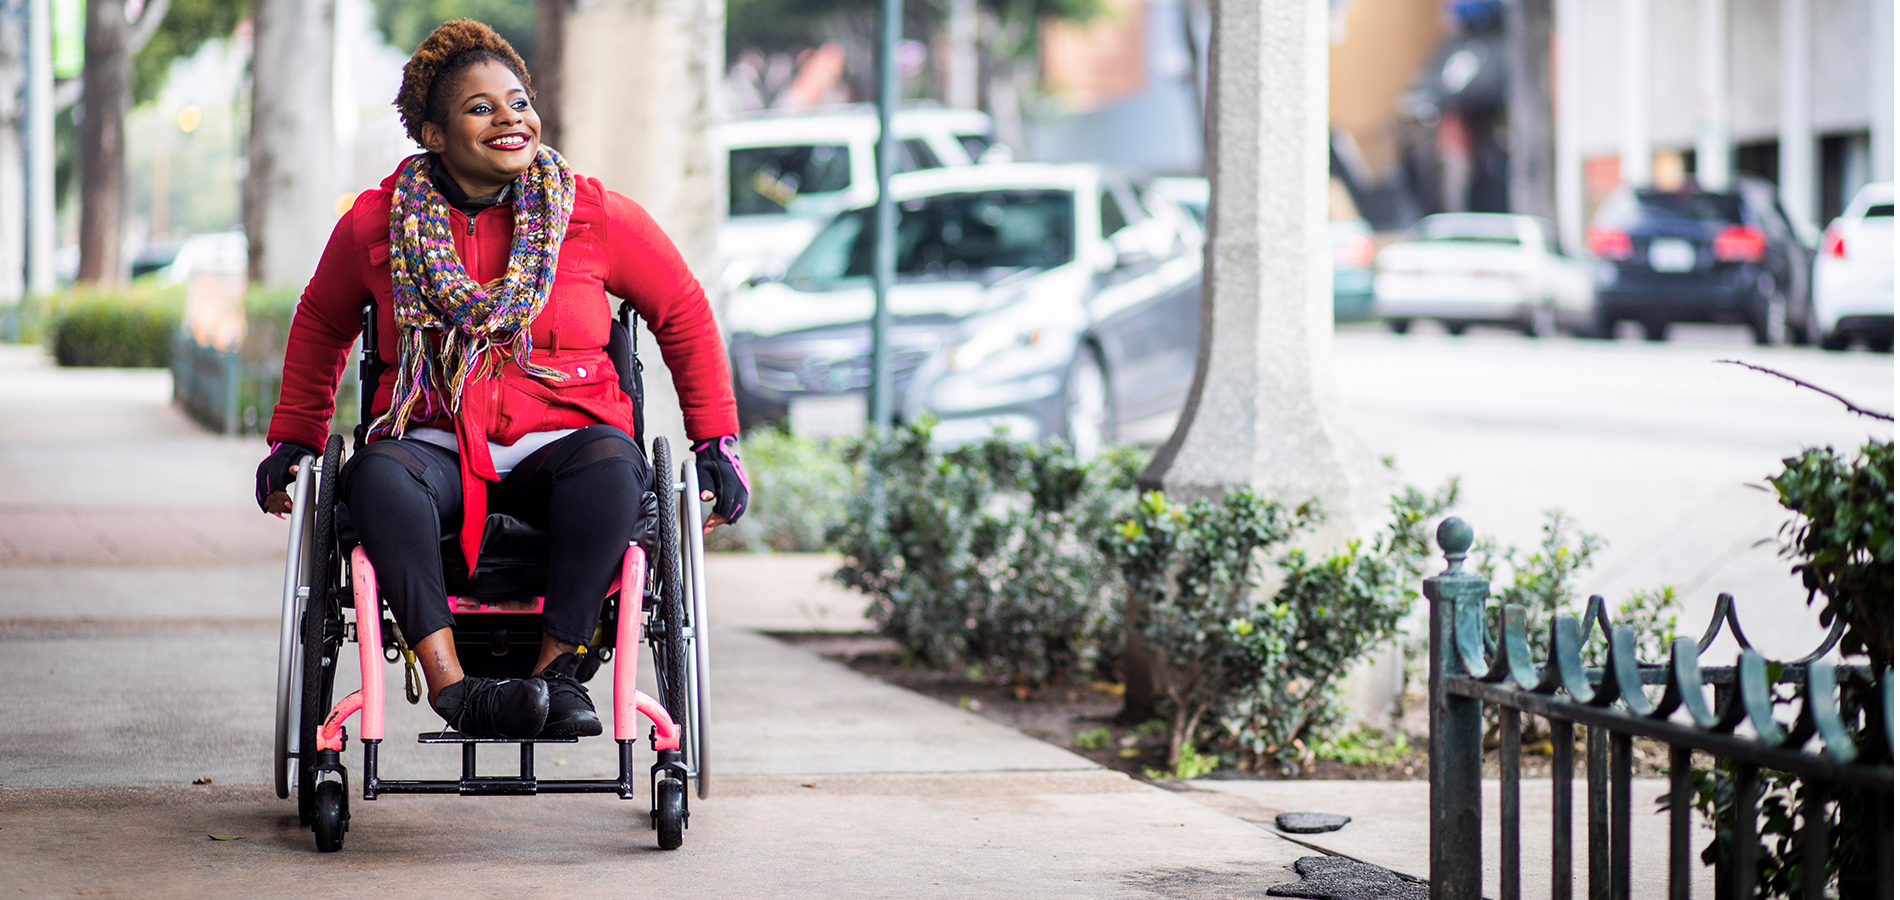 Junge Frau im Rollstuhl unterwegs auf dem Bürgersteig